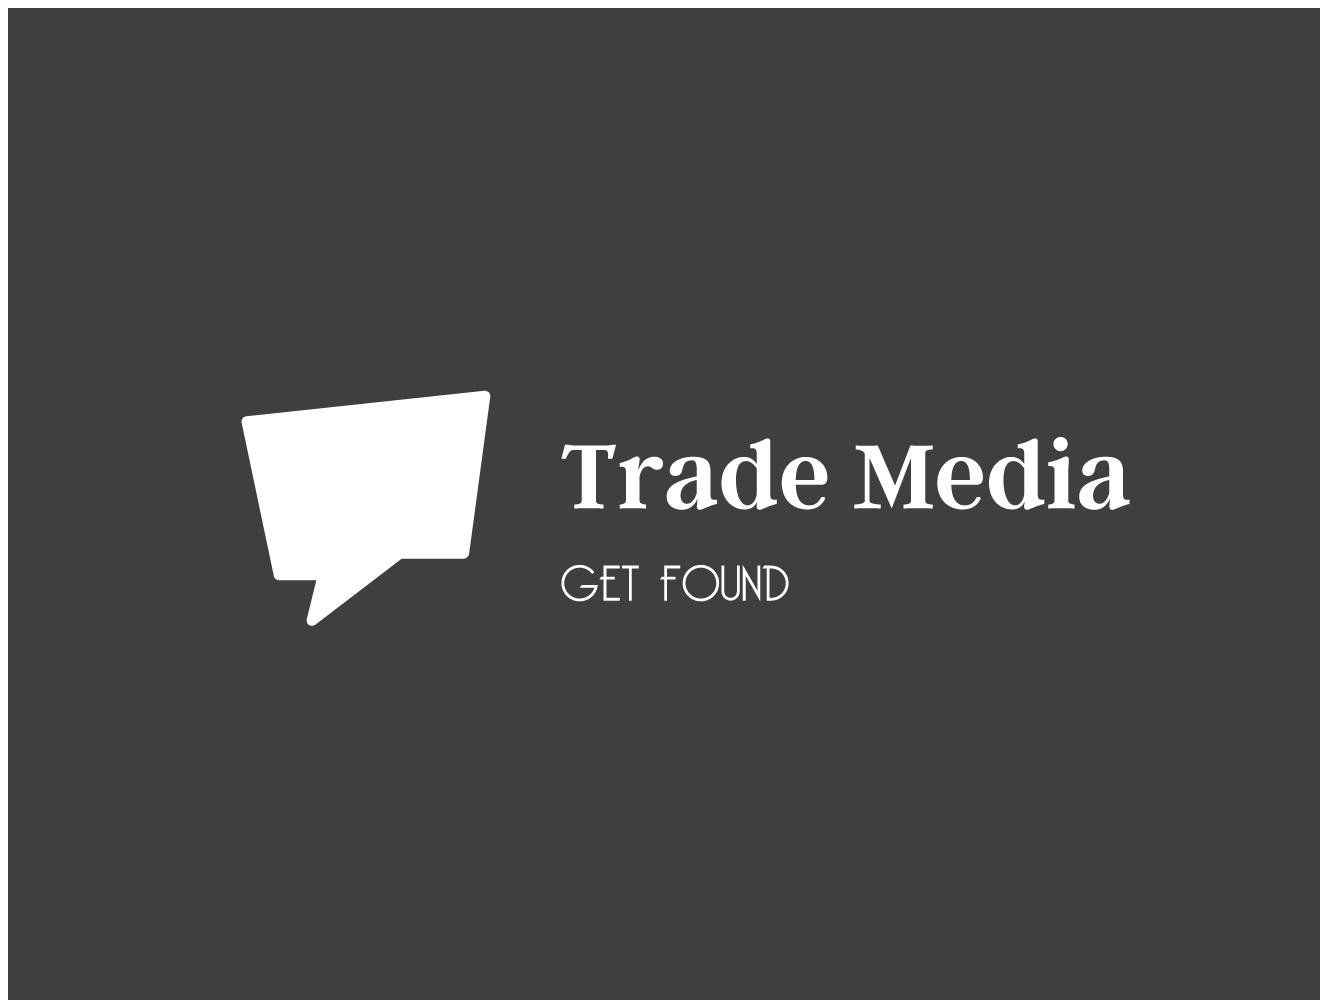 Trade Media